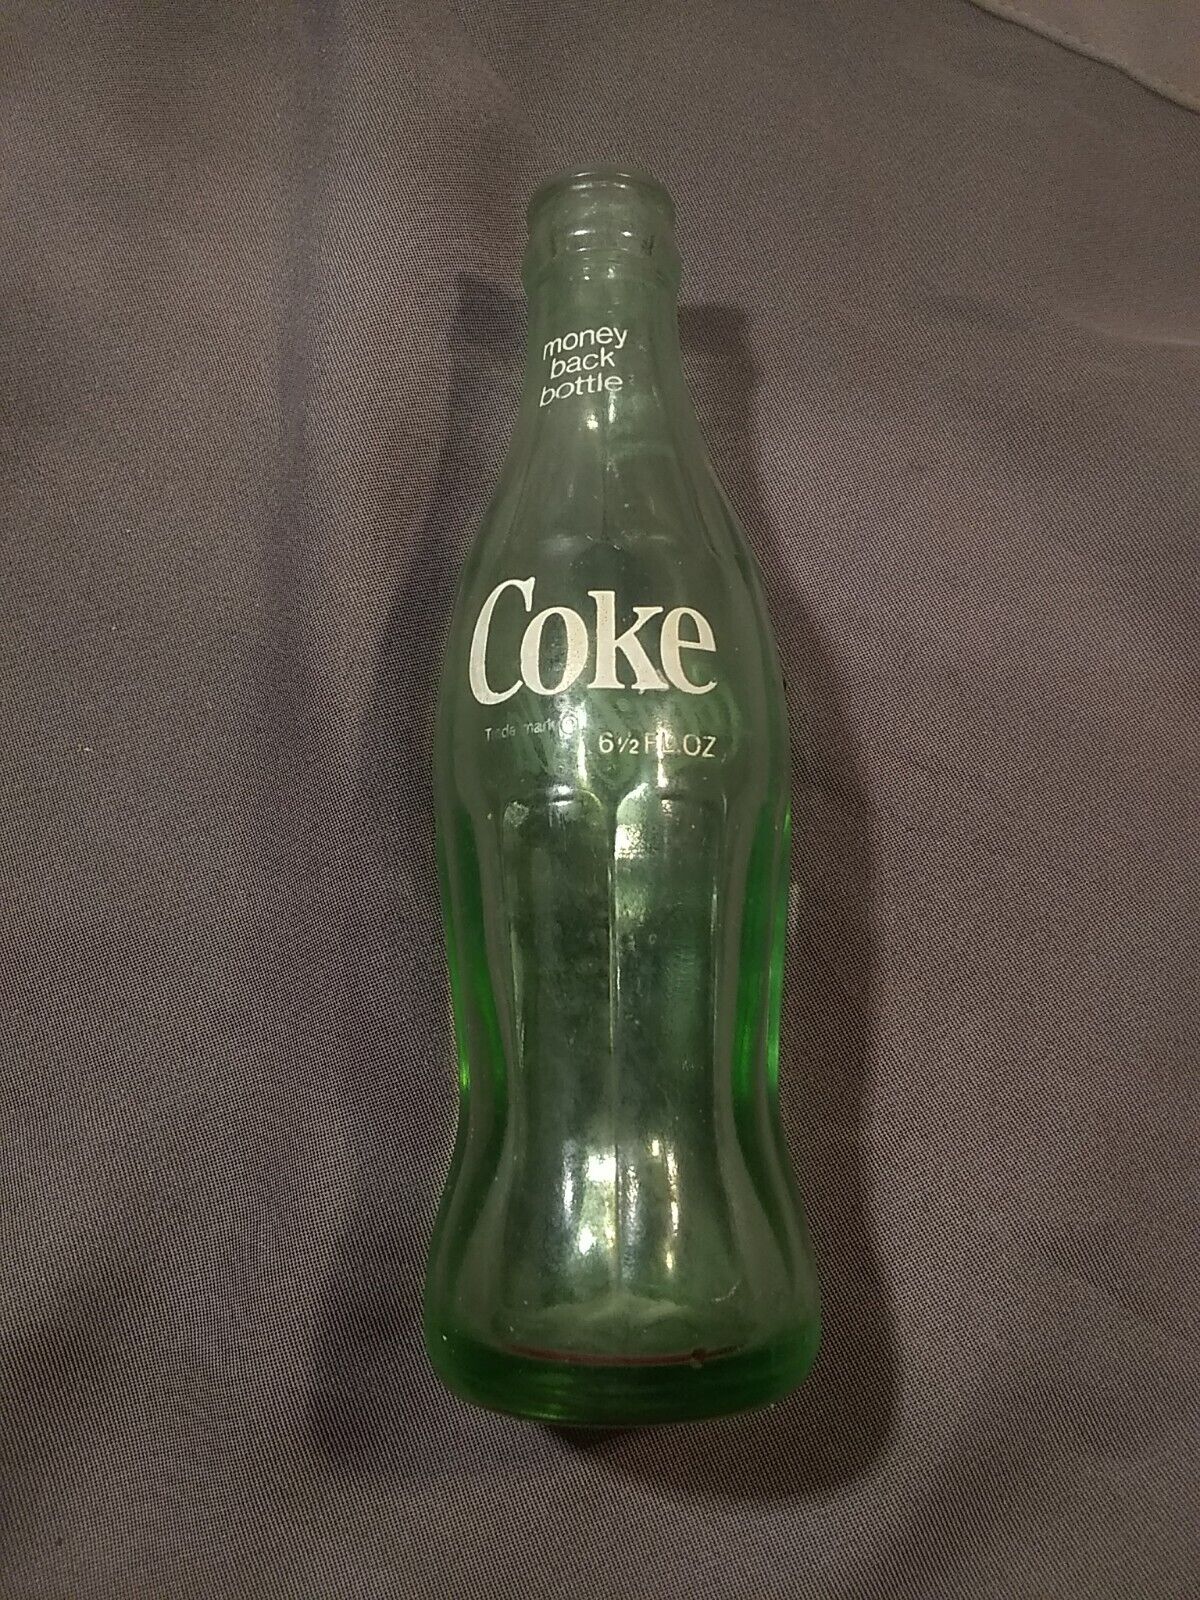 Coca-Cola Coke Bottle  1975 El Paso TX 